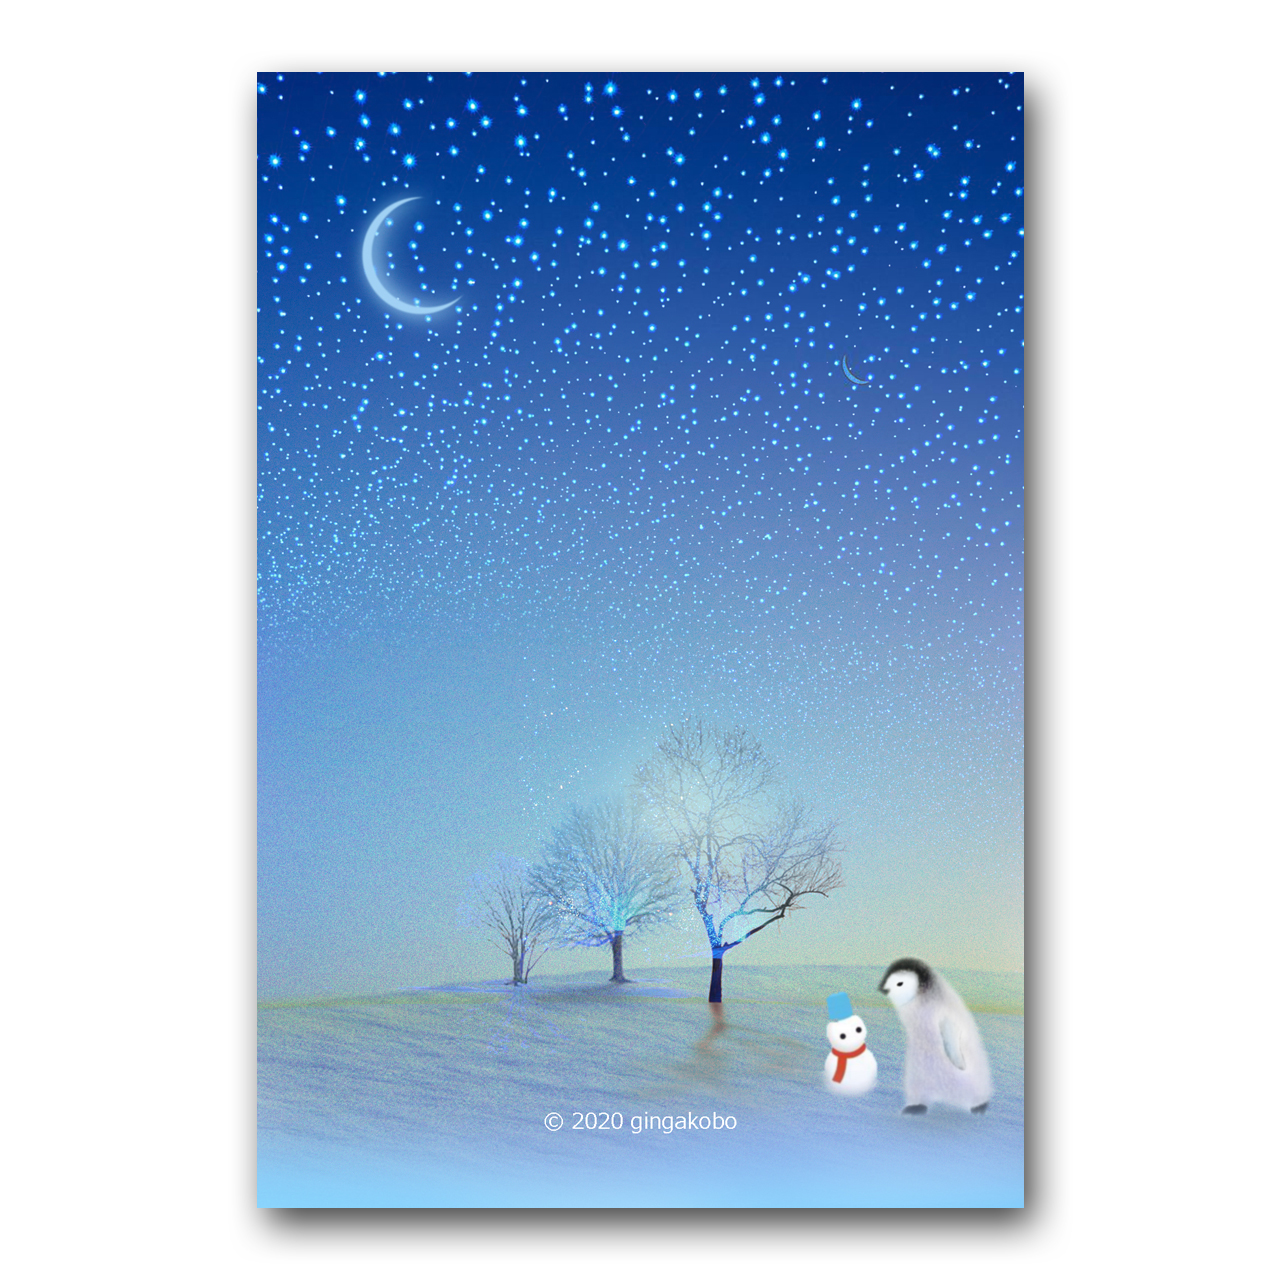 じゃあね と またね で明日はできている ペンギン 雪だるま ほっこり癒しのイラストポストカード2枚組 No 1241 Iichi ハンドメイド クラフト作品 手仕事品の通販